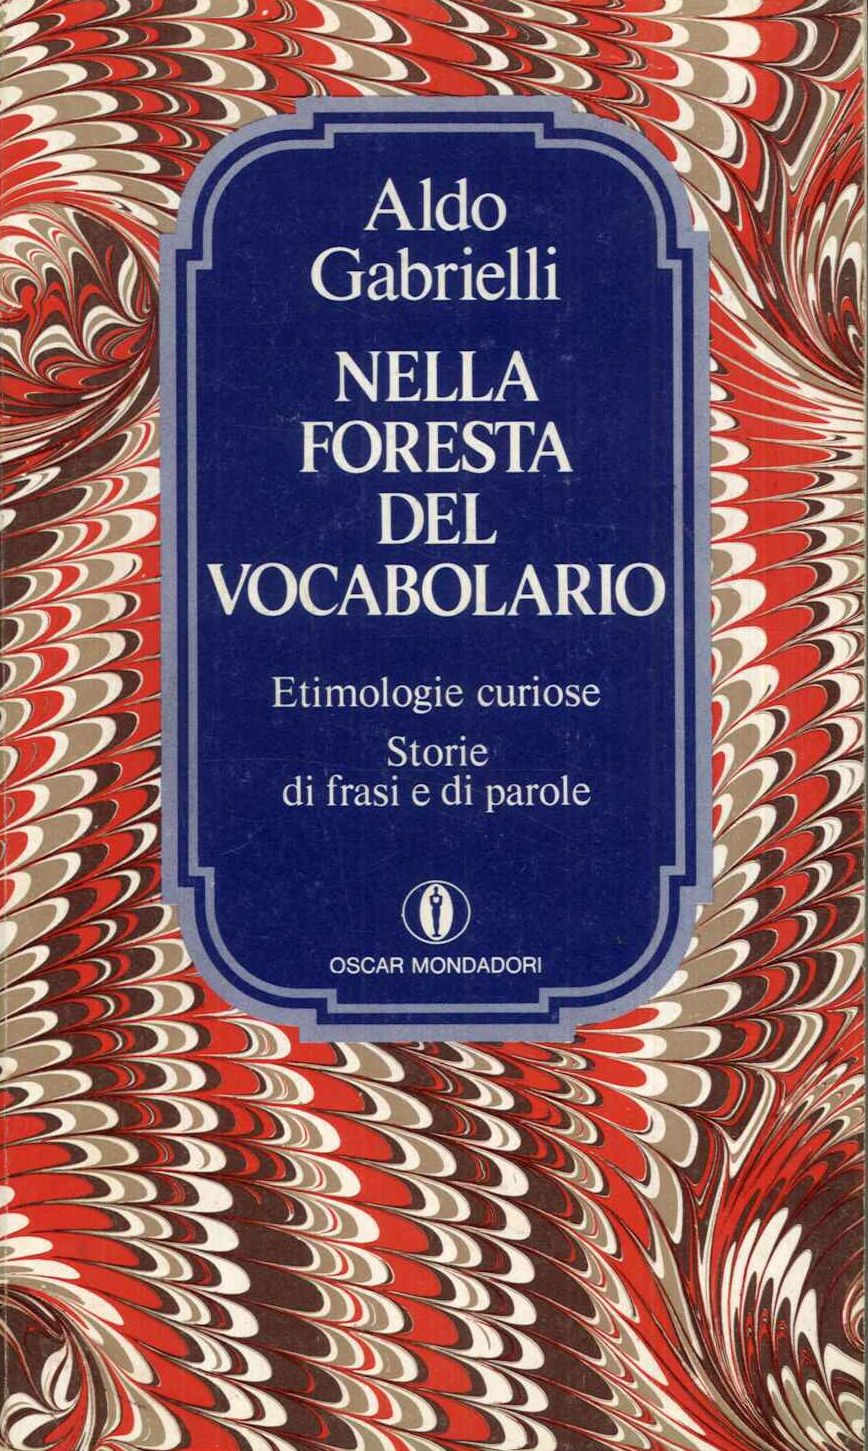 Nella foresta del vocabolario-etimologie curiose, storie di frasi e parole